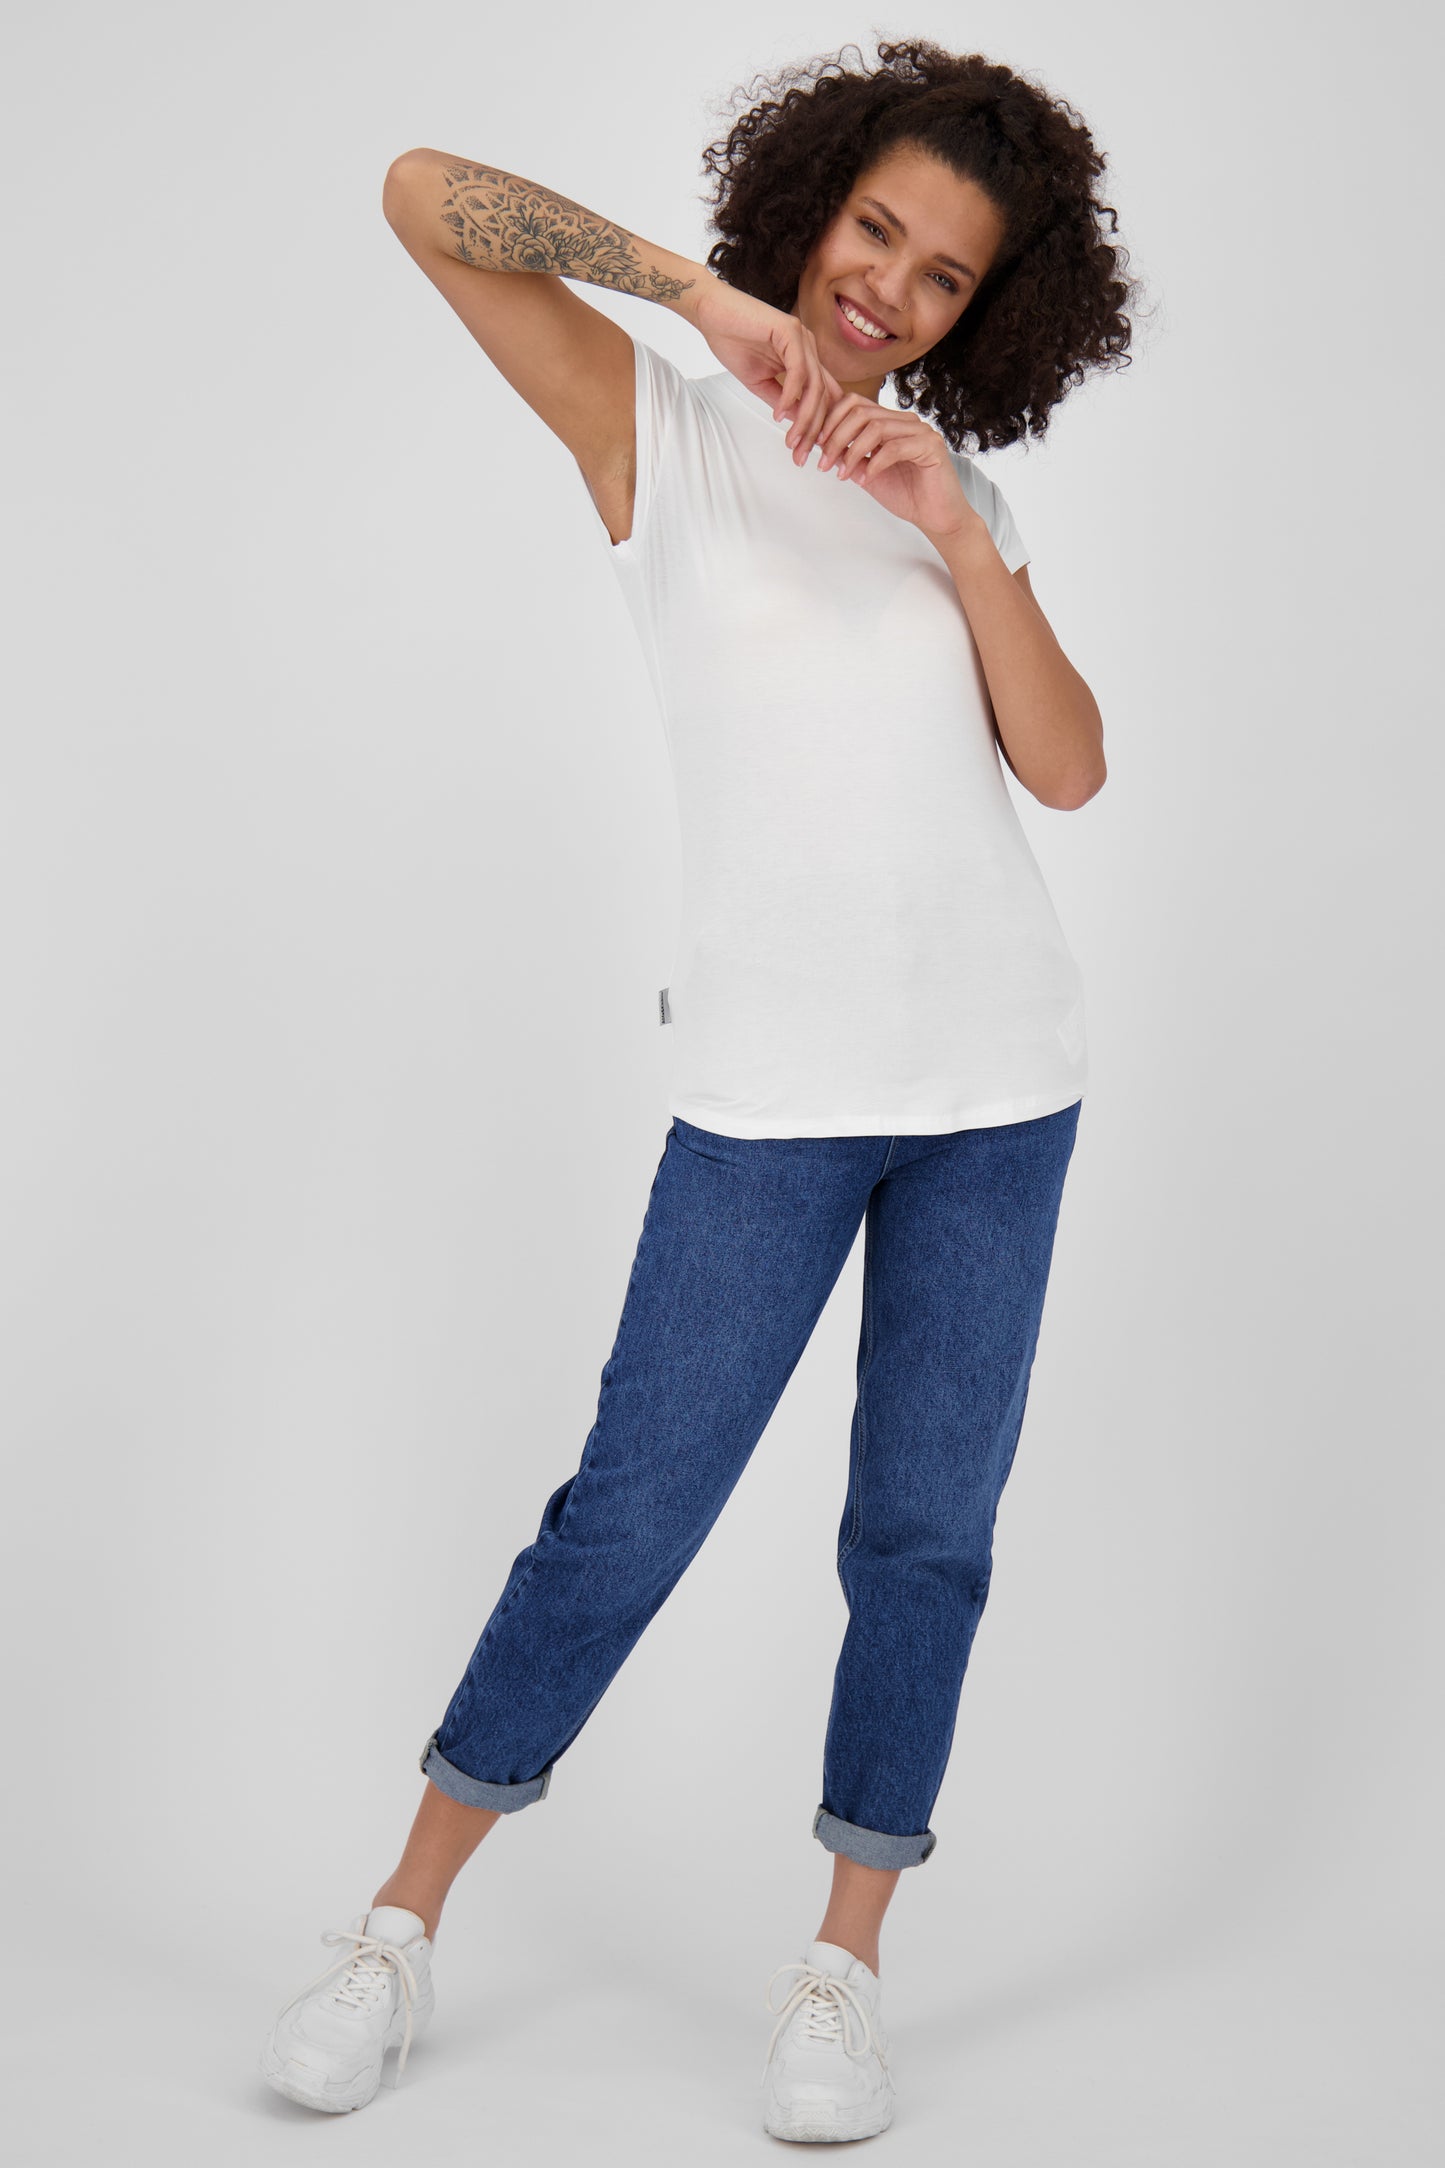 Vielseitiges Basic-Shirt für stylische Outfits: MimmyAK A von Alife and Kickin Weiß